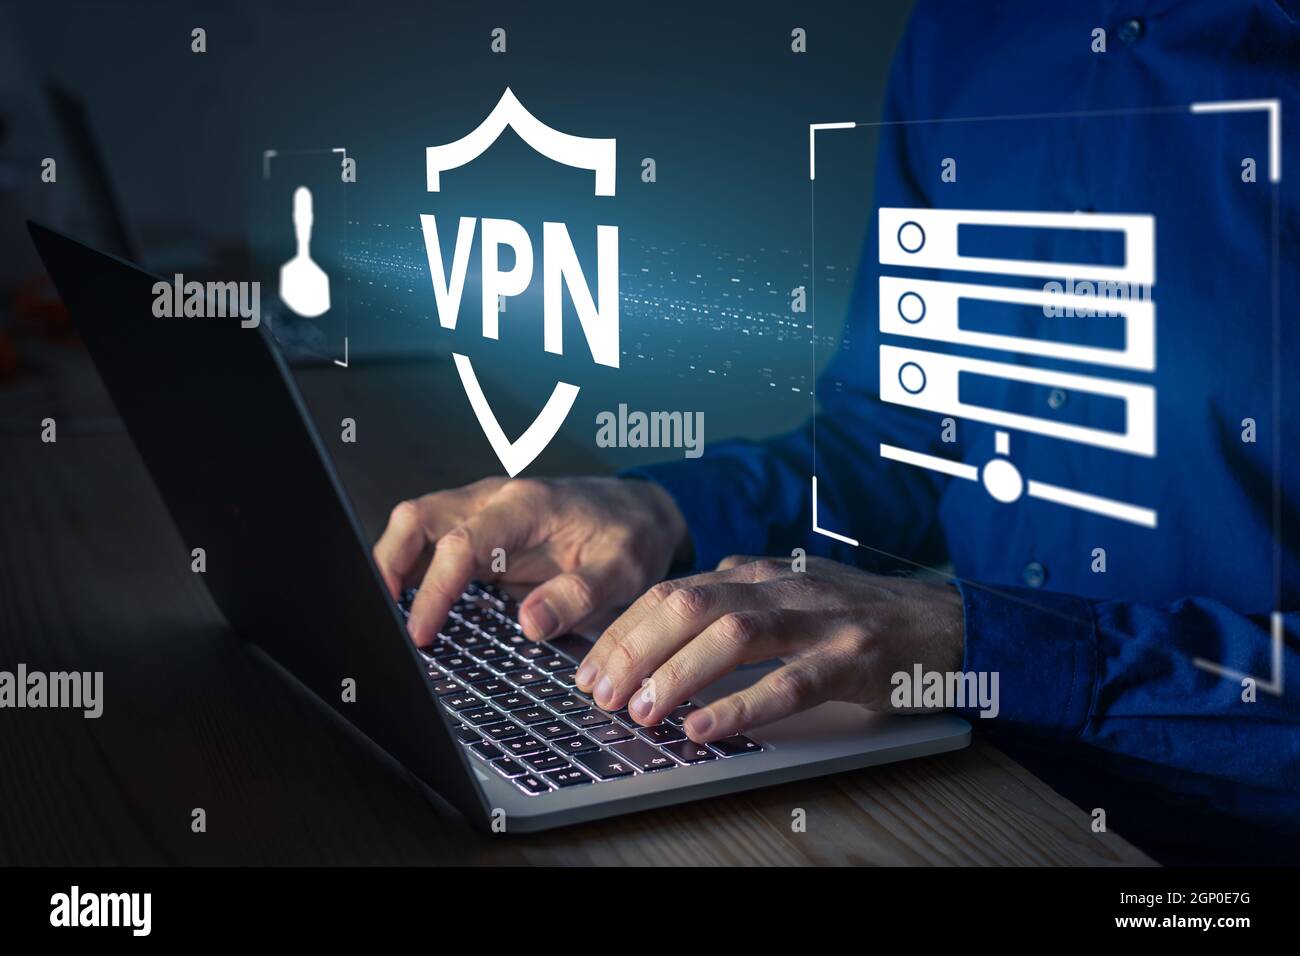 Concept de connexion sécurisée VPN. Personne utilisant la technologie Virtual Private Network sur un ordinateur portable pour créer un tunnel chiffré vers le serveur distant sur inter Banque D'Images